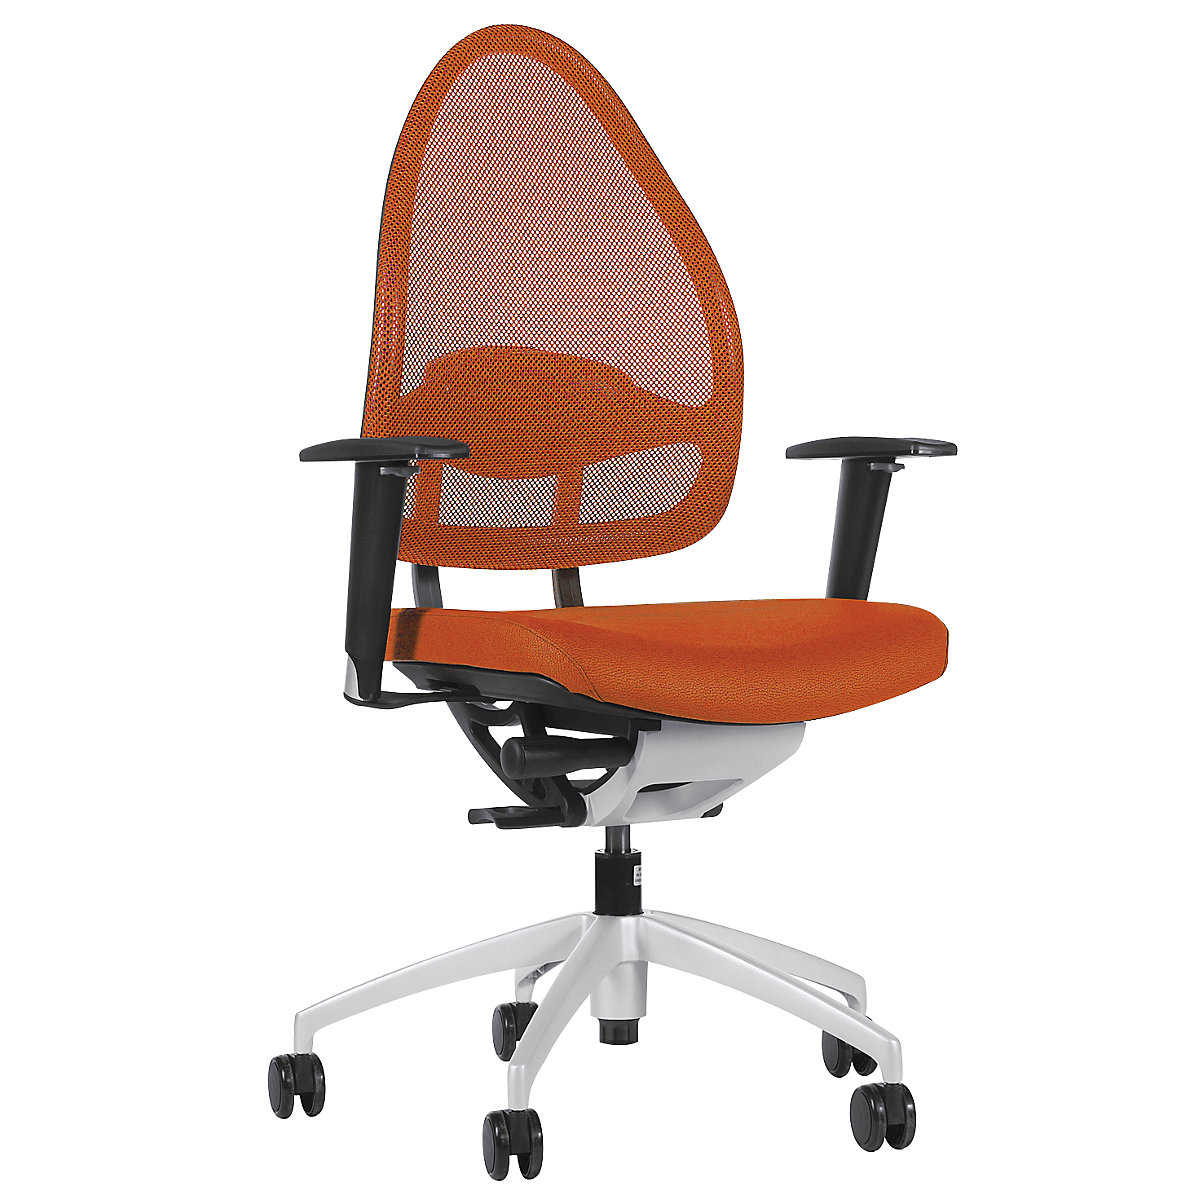 Sedia girevole per ufficio, elegante, con schienale in rete - Topstar